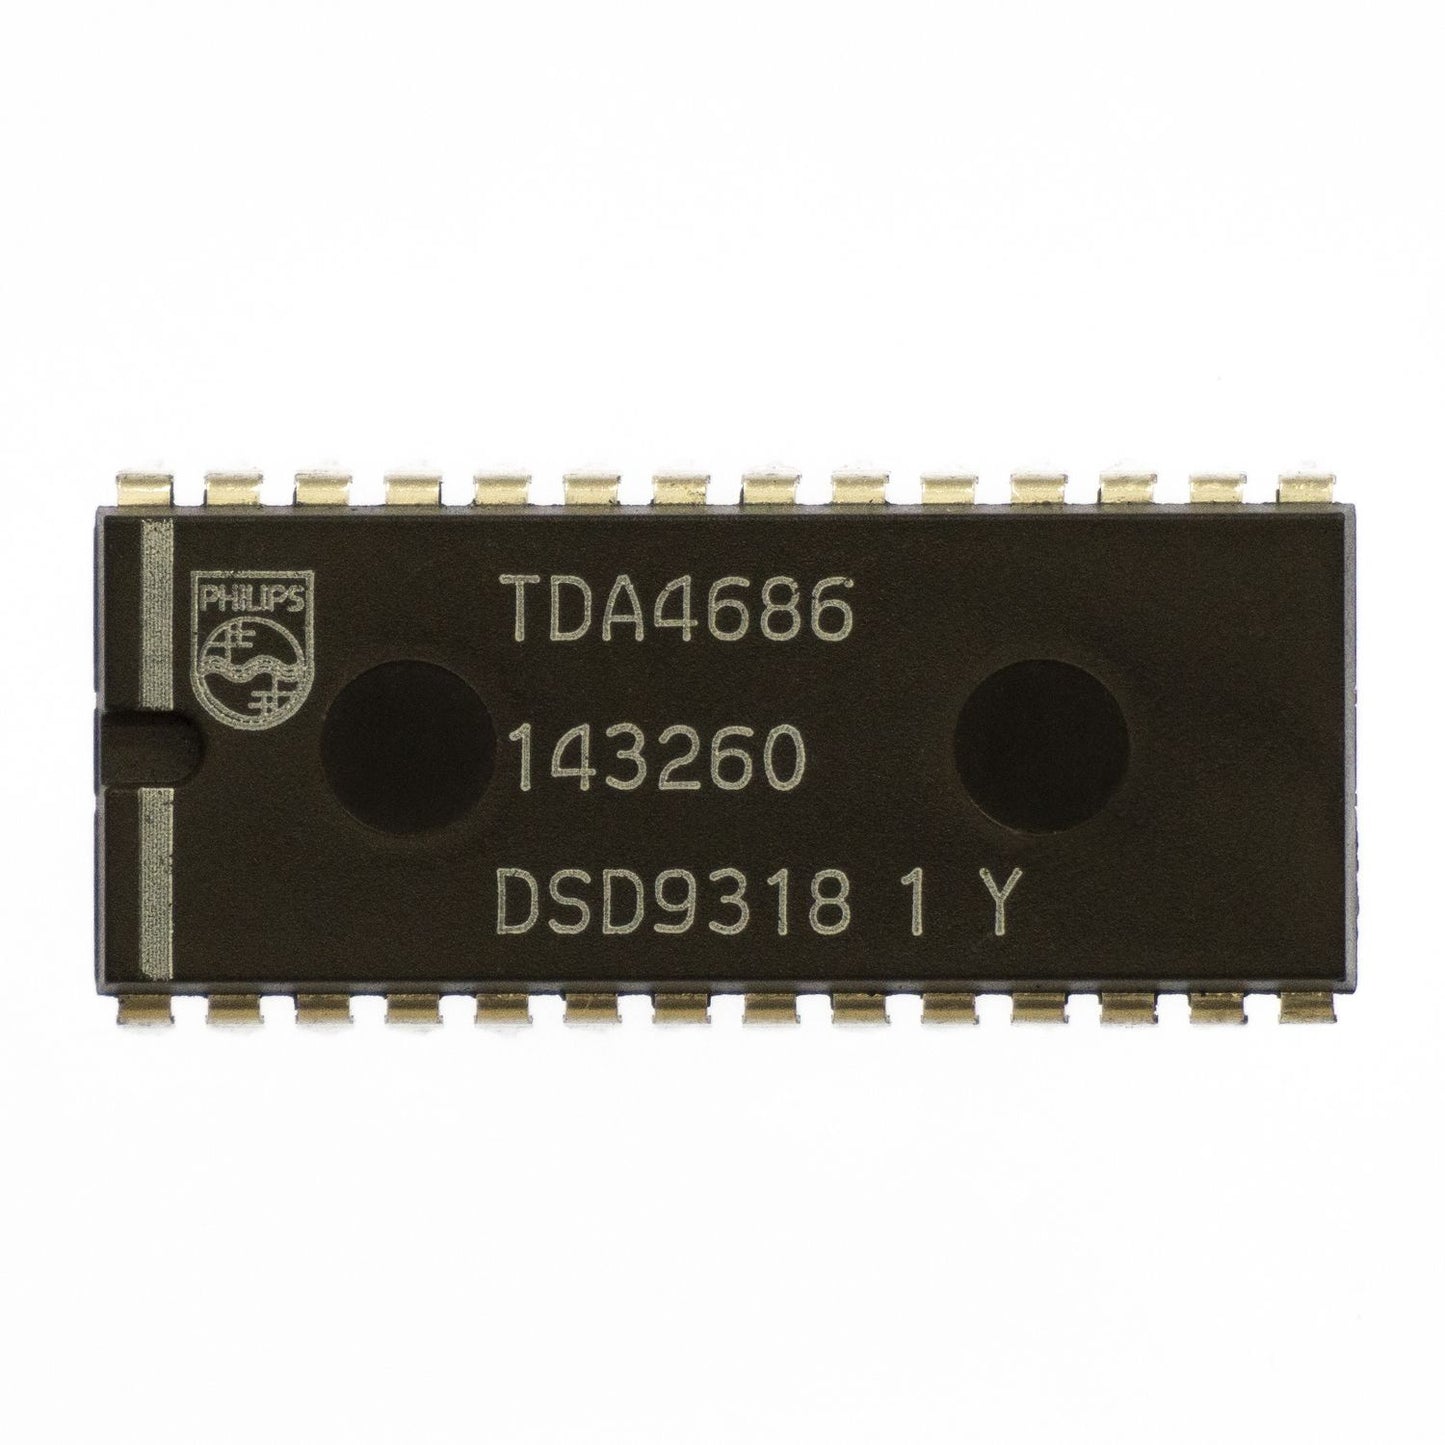 Philips TDA4686 circuito integrato, transistor, componente elettronico, 28 contatti